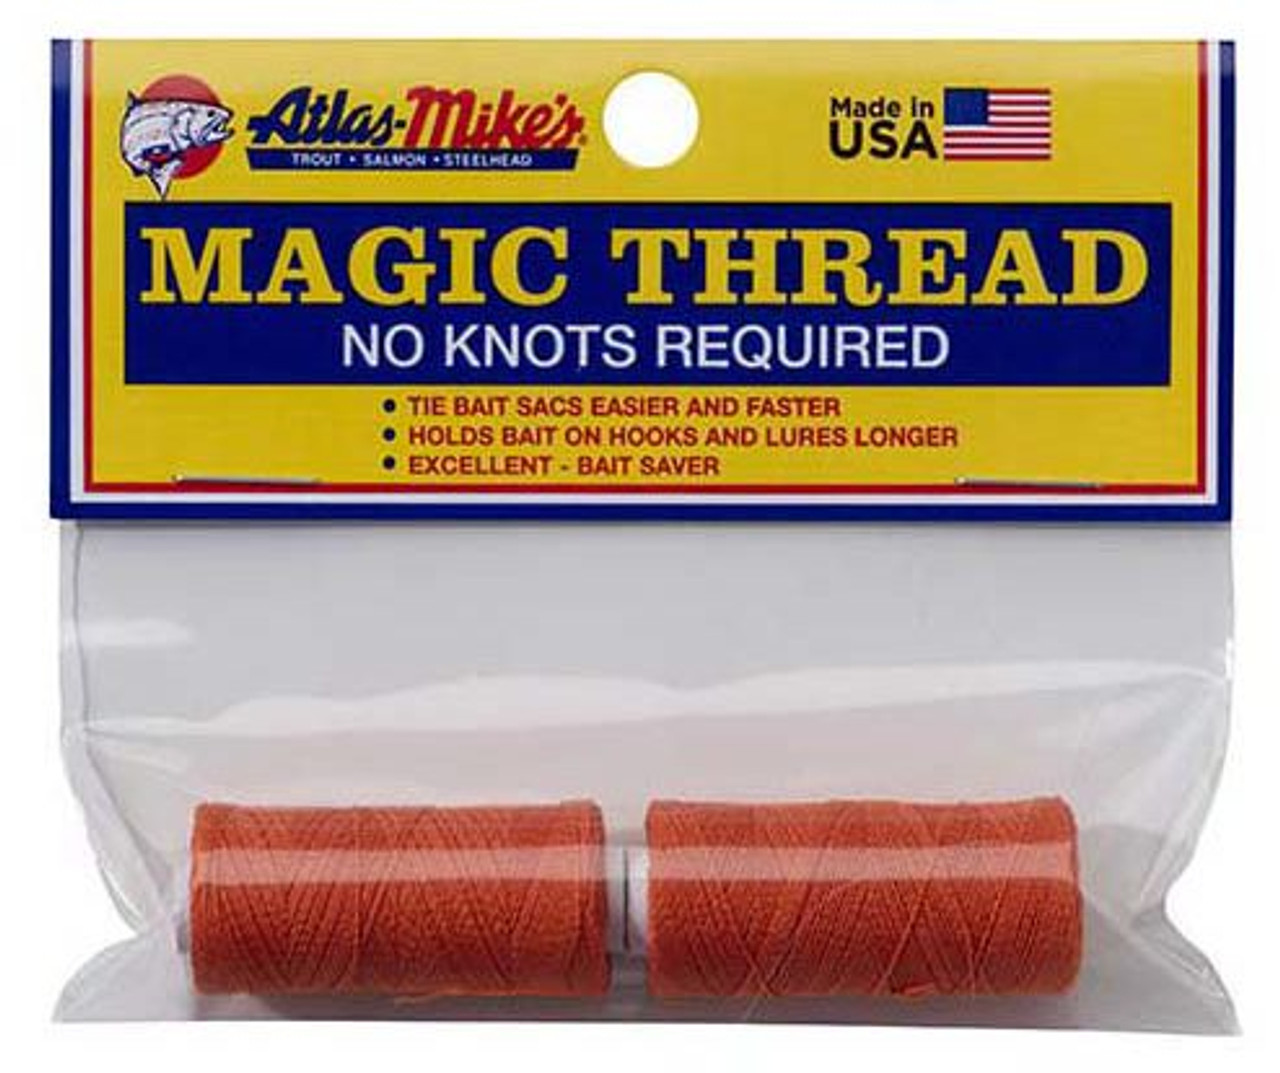 Atlas Magic Thread - 2 Pack